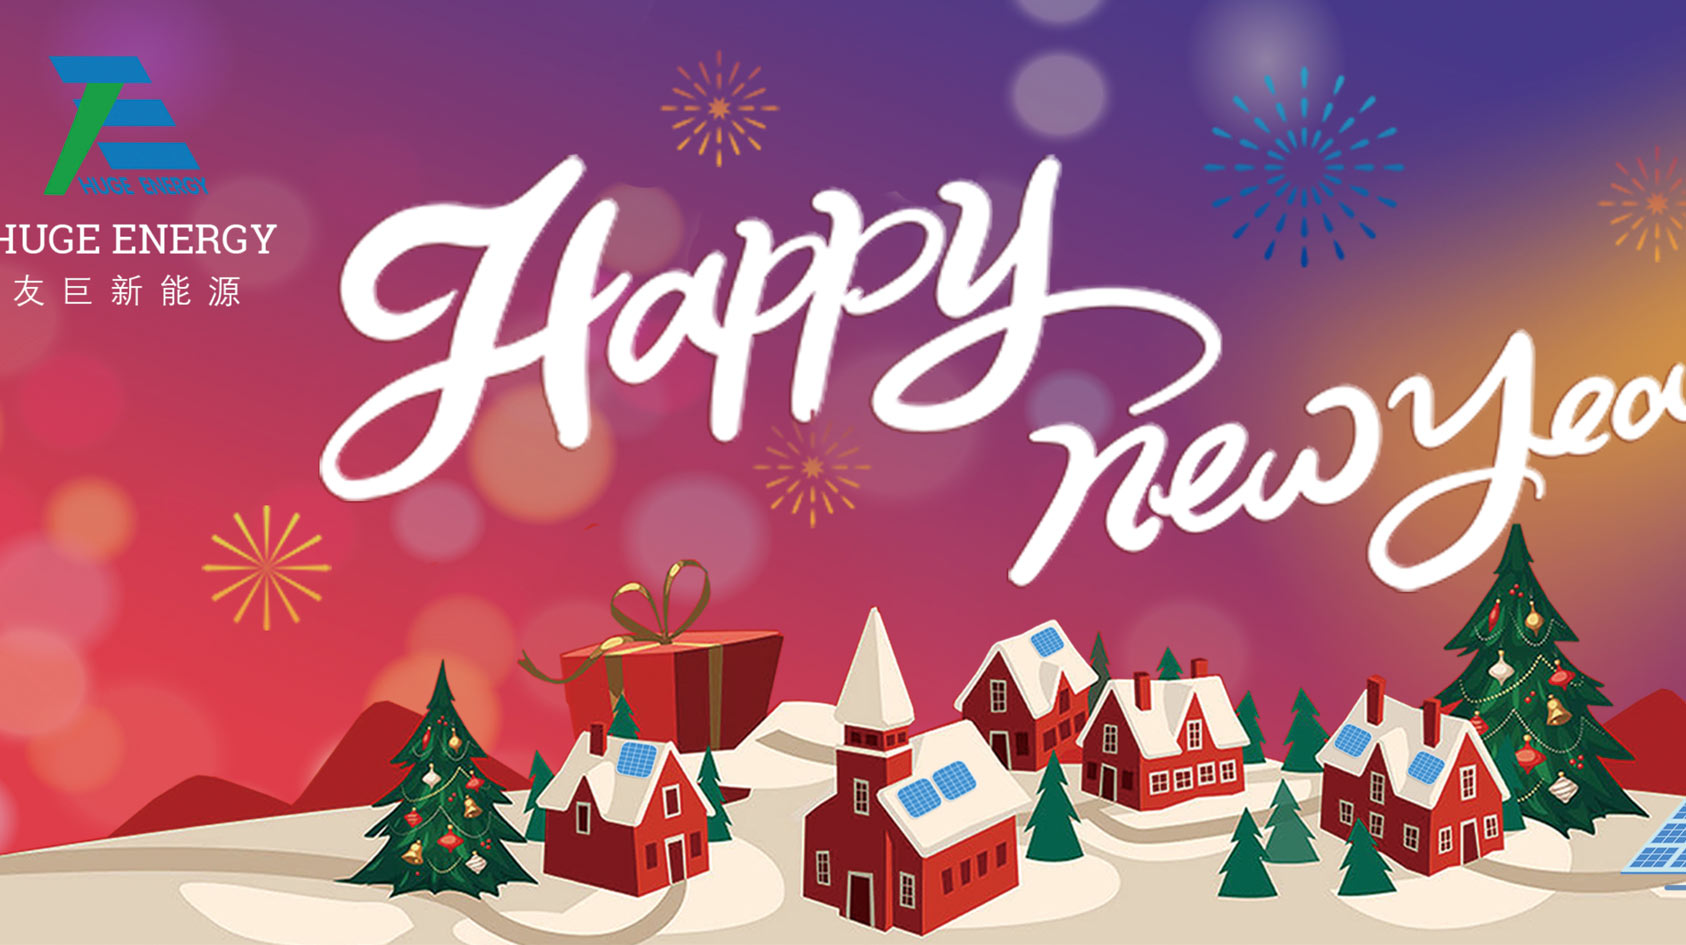 В начале нового года Huge Energy желает вам счастливого Нового года!